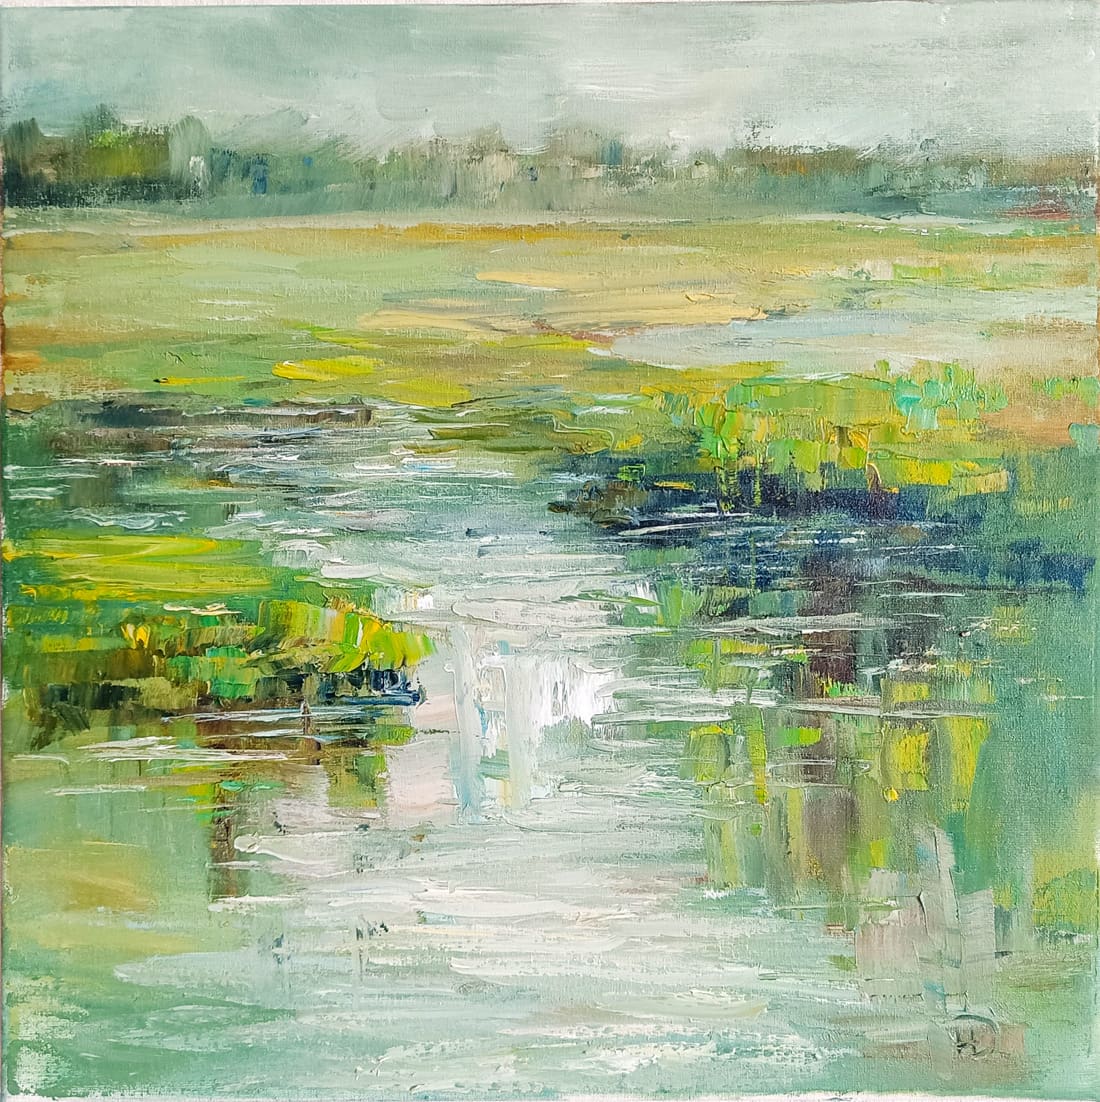 Свежая молодая зелень во время разлива на реке в картине "Нежно зелёное" художника Нины Дивинской (Волгоград)